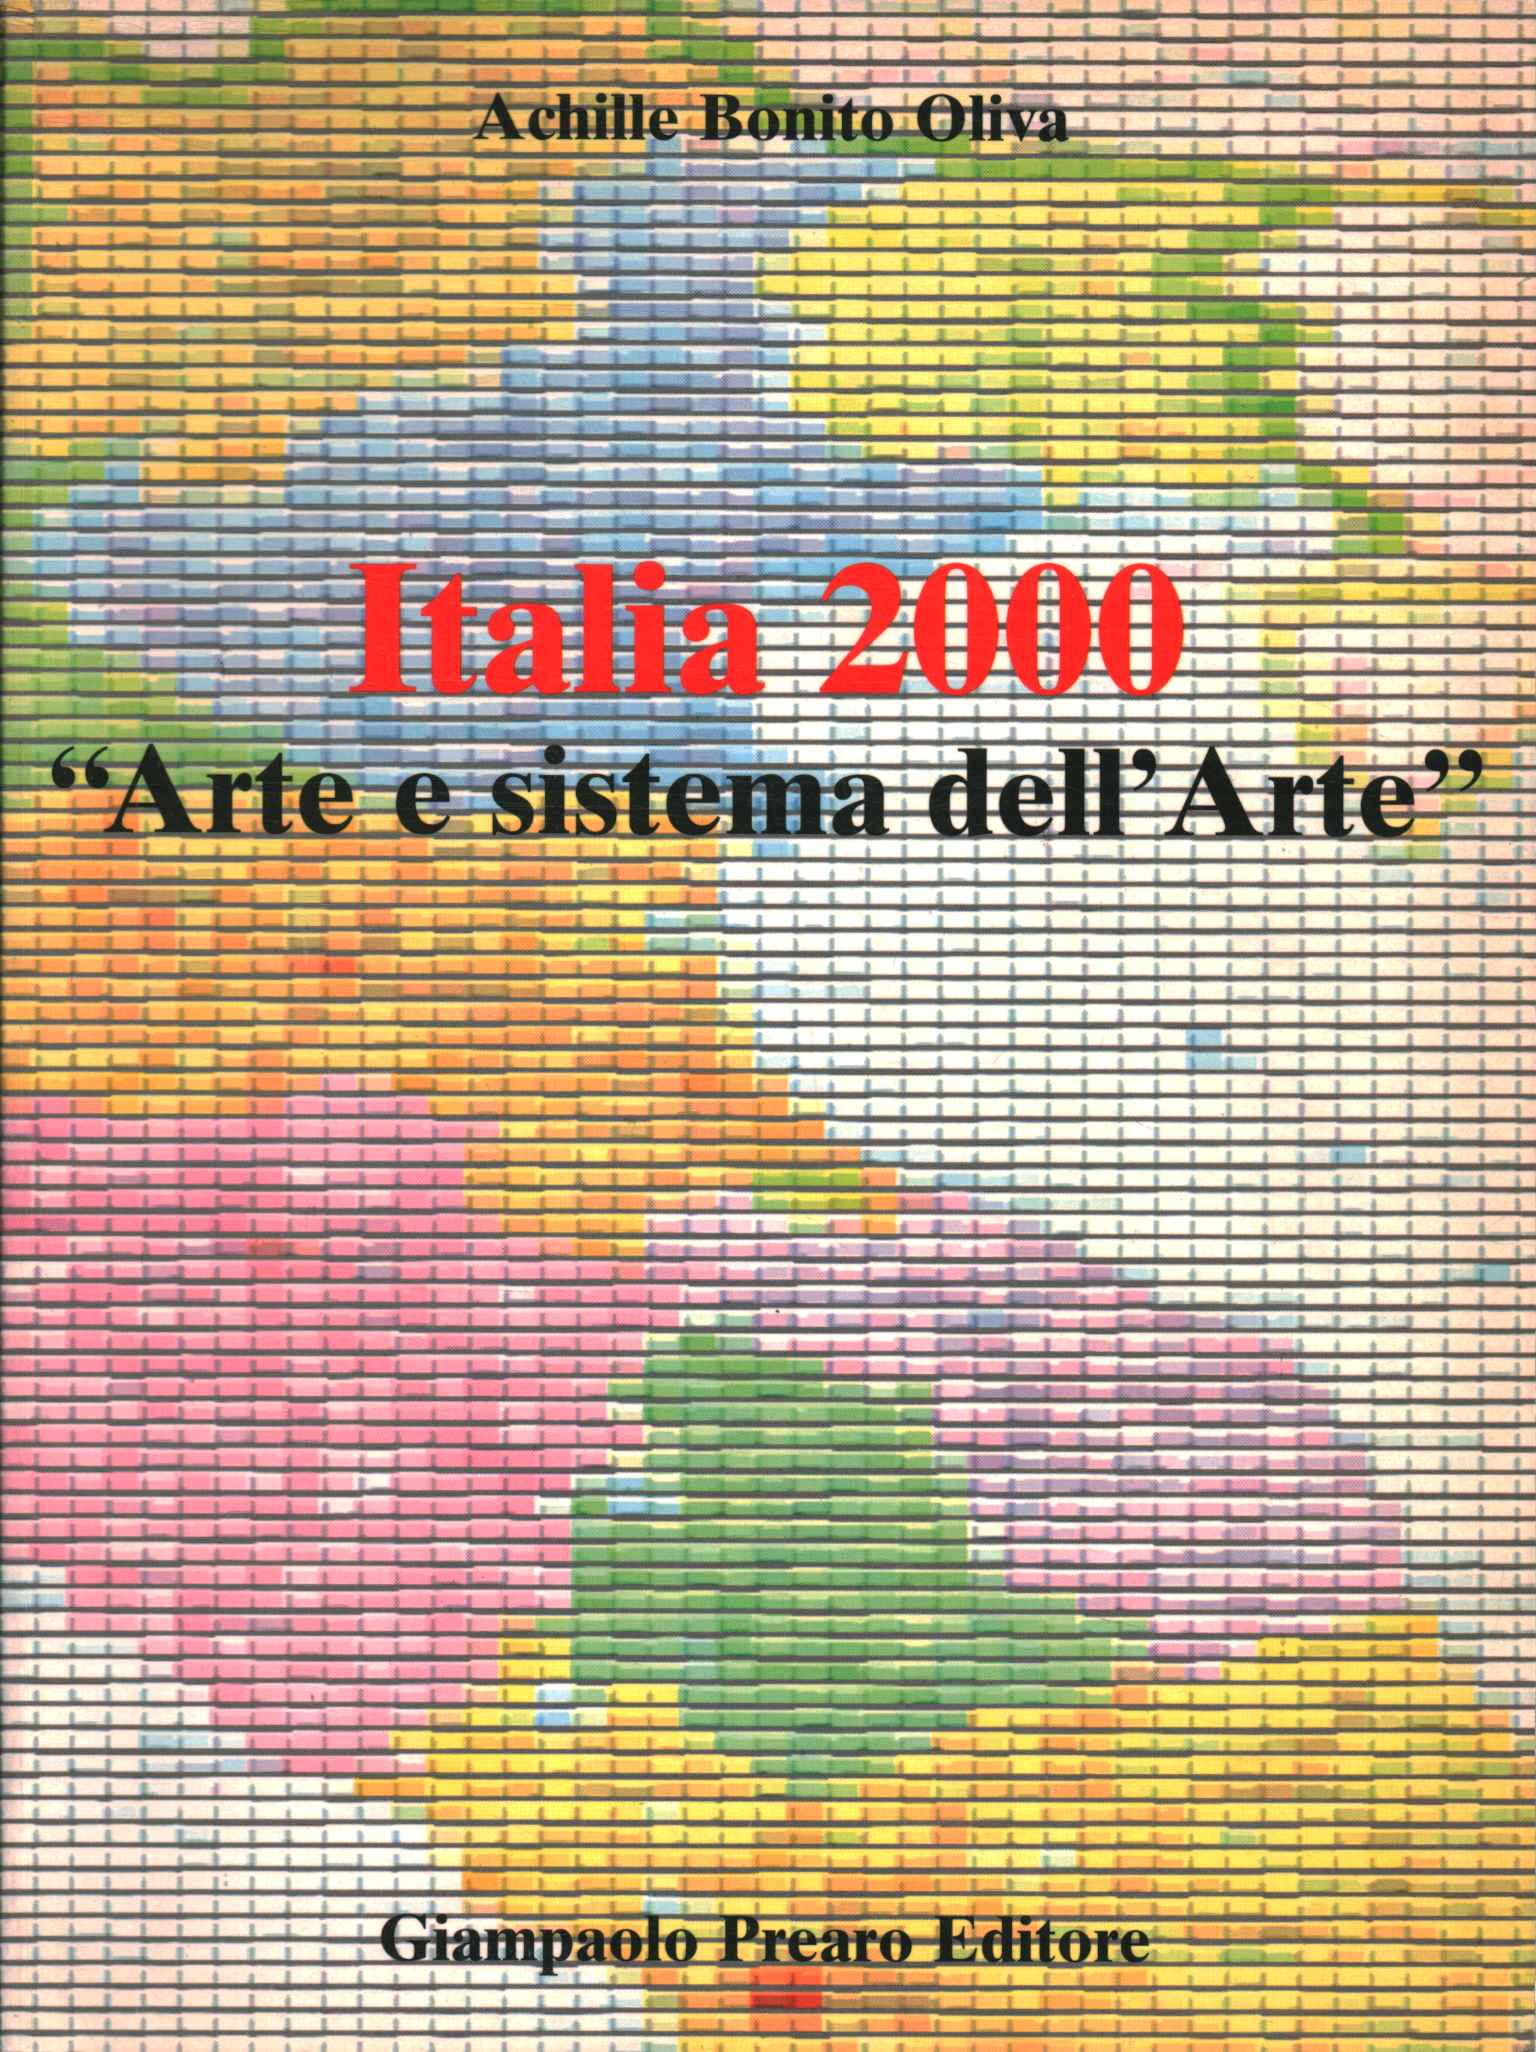 Italy 2000